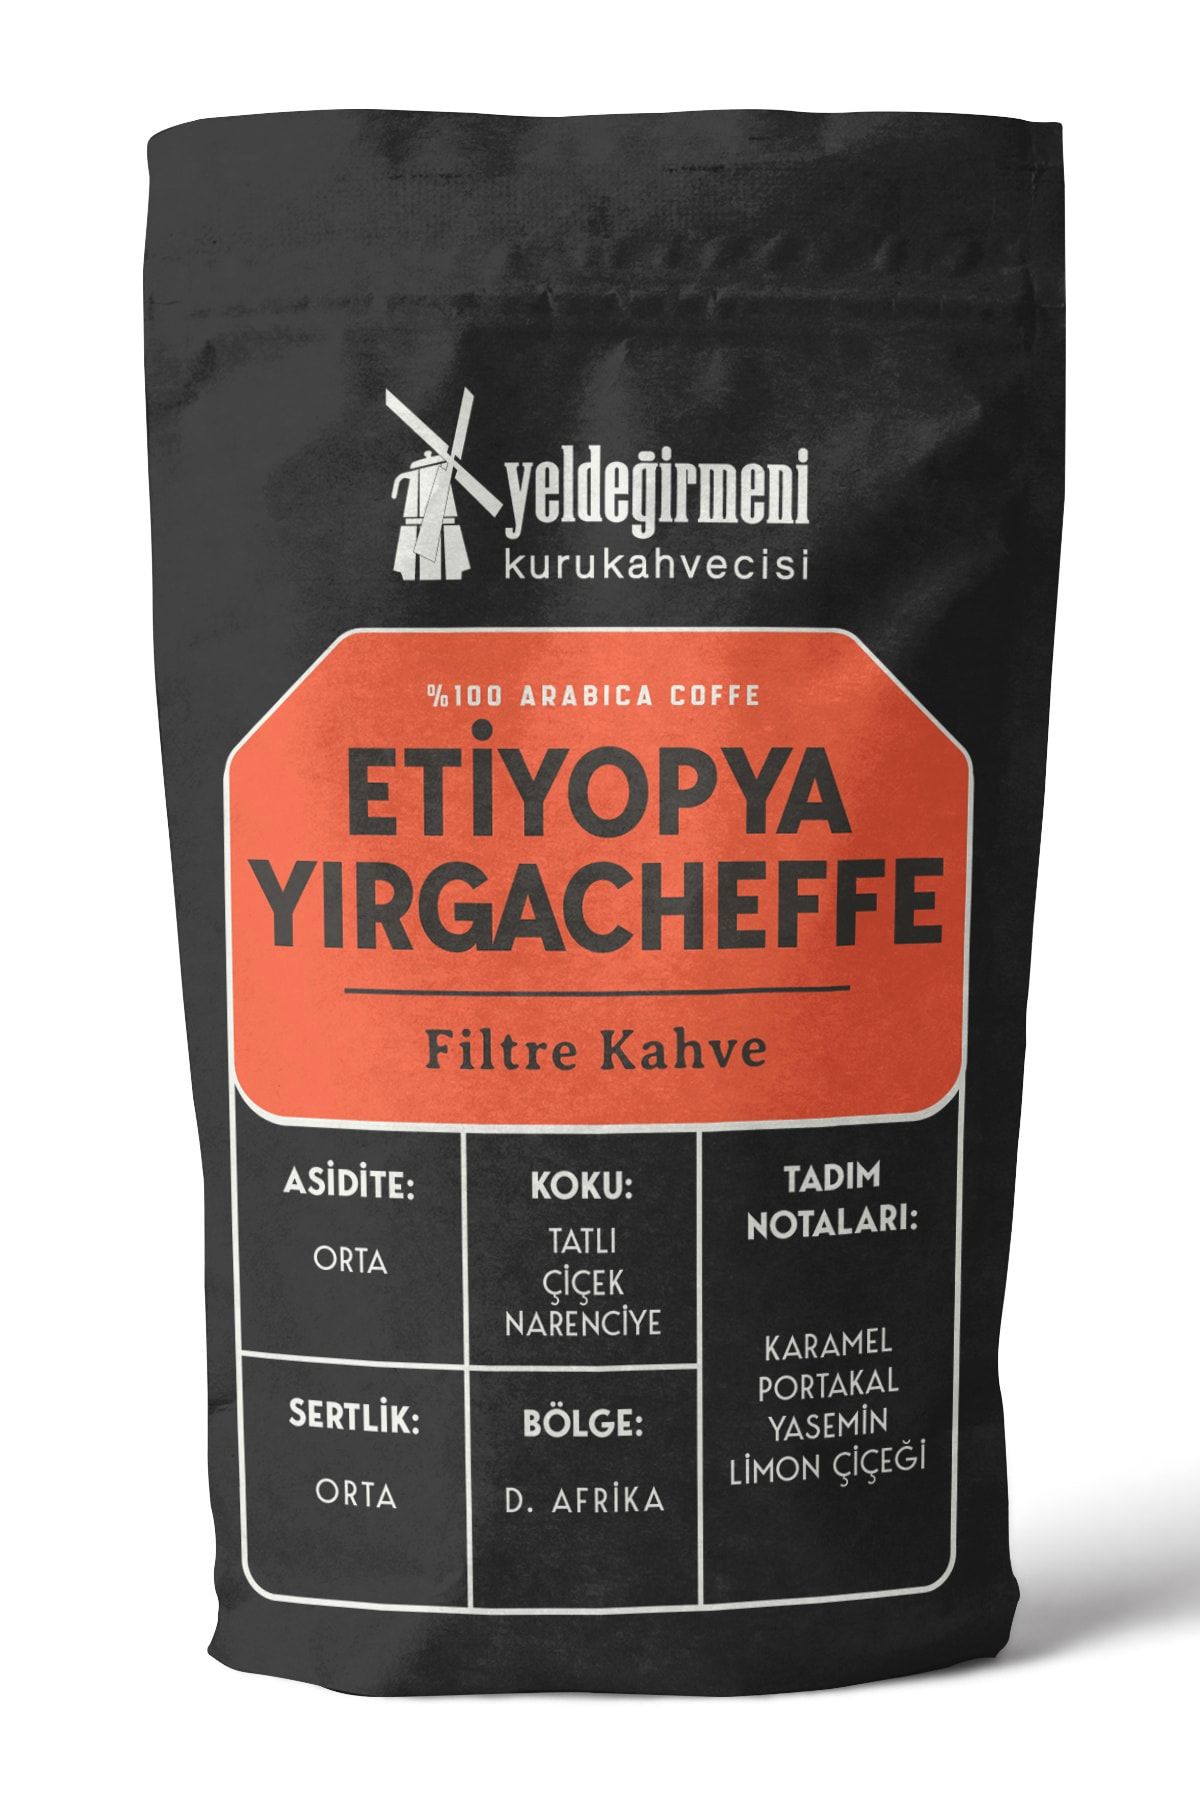 Yeldeğirmeni Kurukahvecisi Etiyopya Yırgacheffe Filtre Kahve 1000 gr